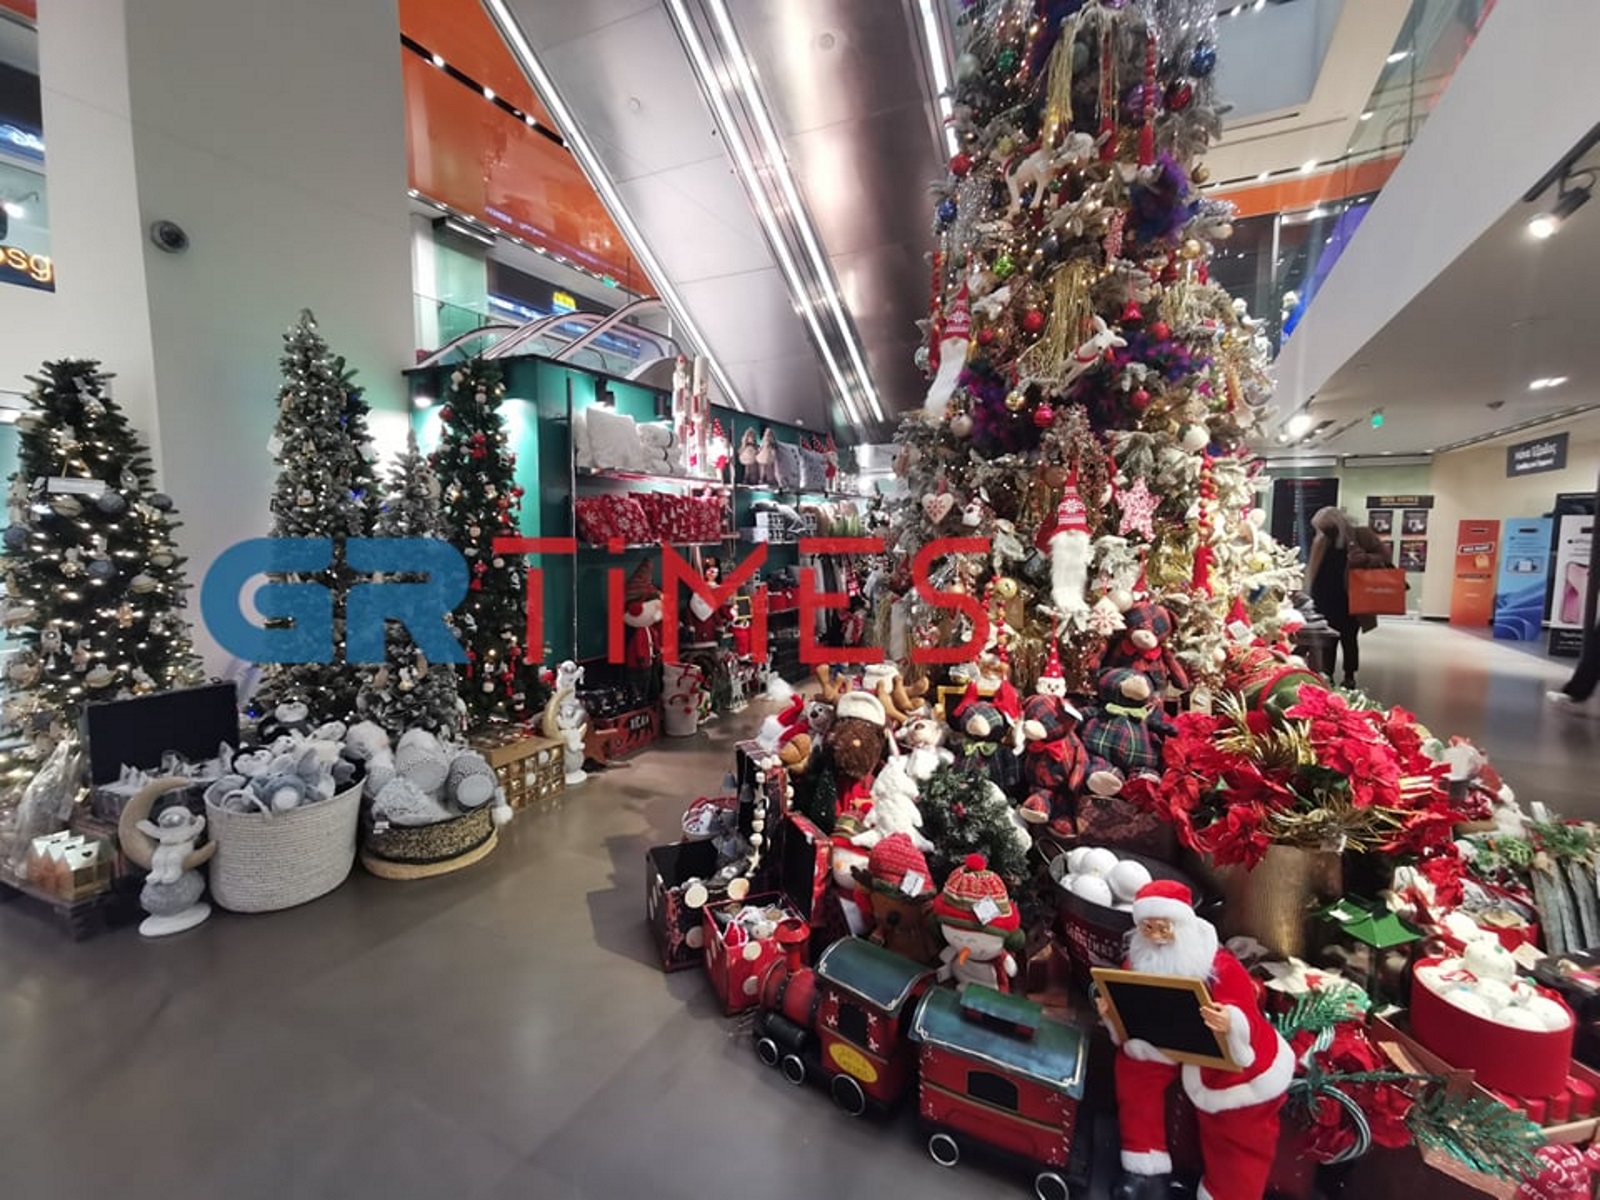 Θεσσαλονίκη: Άρωμα Χριστουγέννων στην αγορά – Στολισμένες βιτρίνες και Άγιοι Βασίληδες